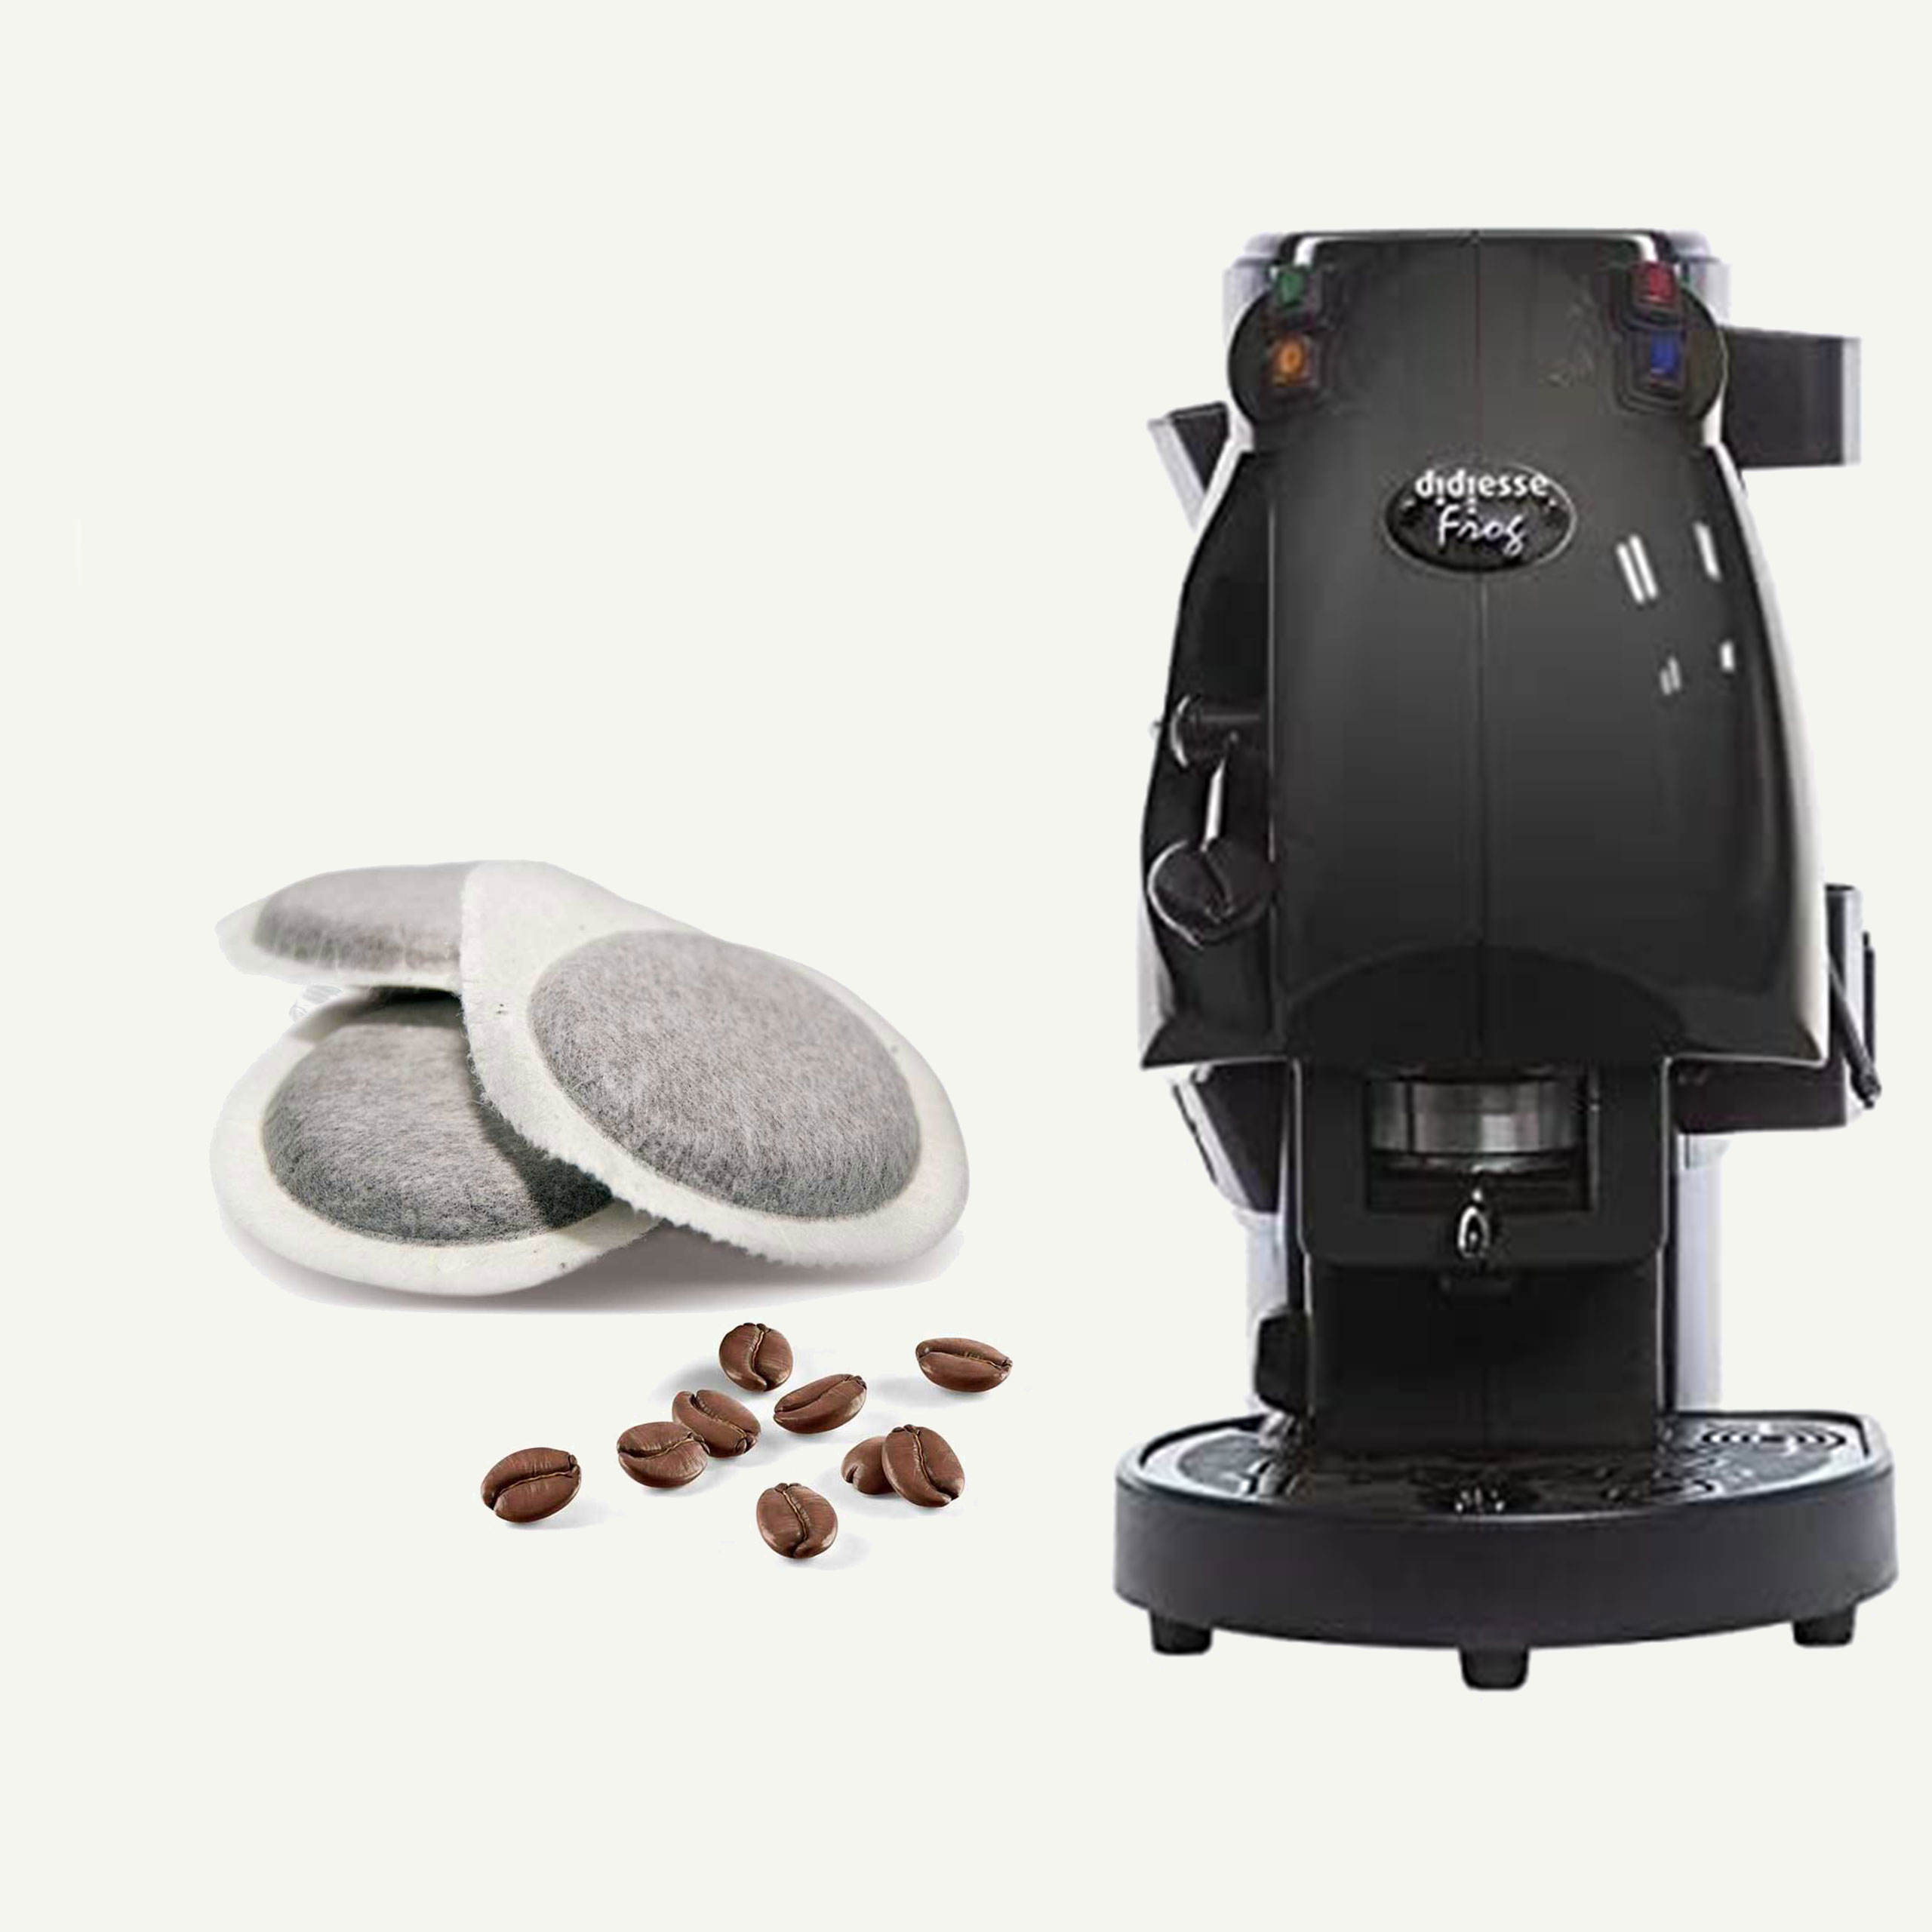 Macchina Caffè Didiesse Frog utilizza cialde filtrocarta 44mm ESE –  Espressioni Caffè – Quando l'abitudine diventa Passione